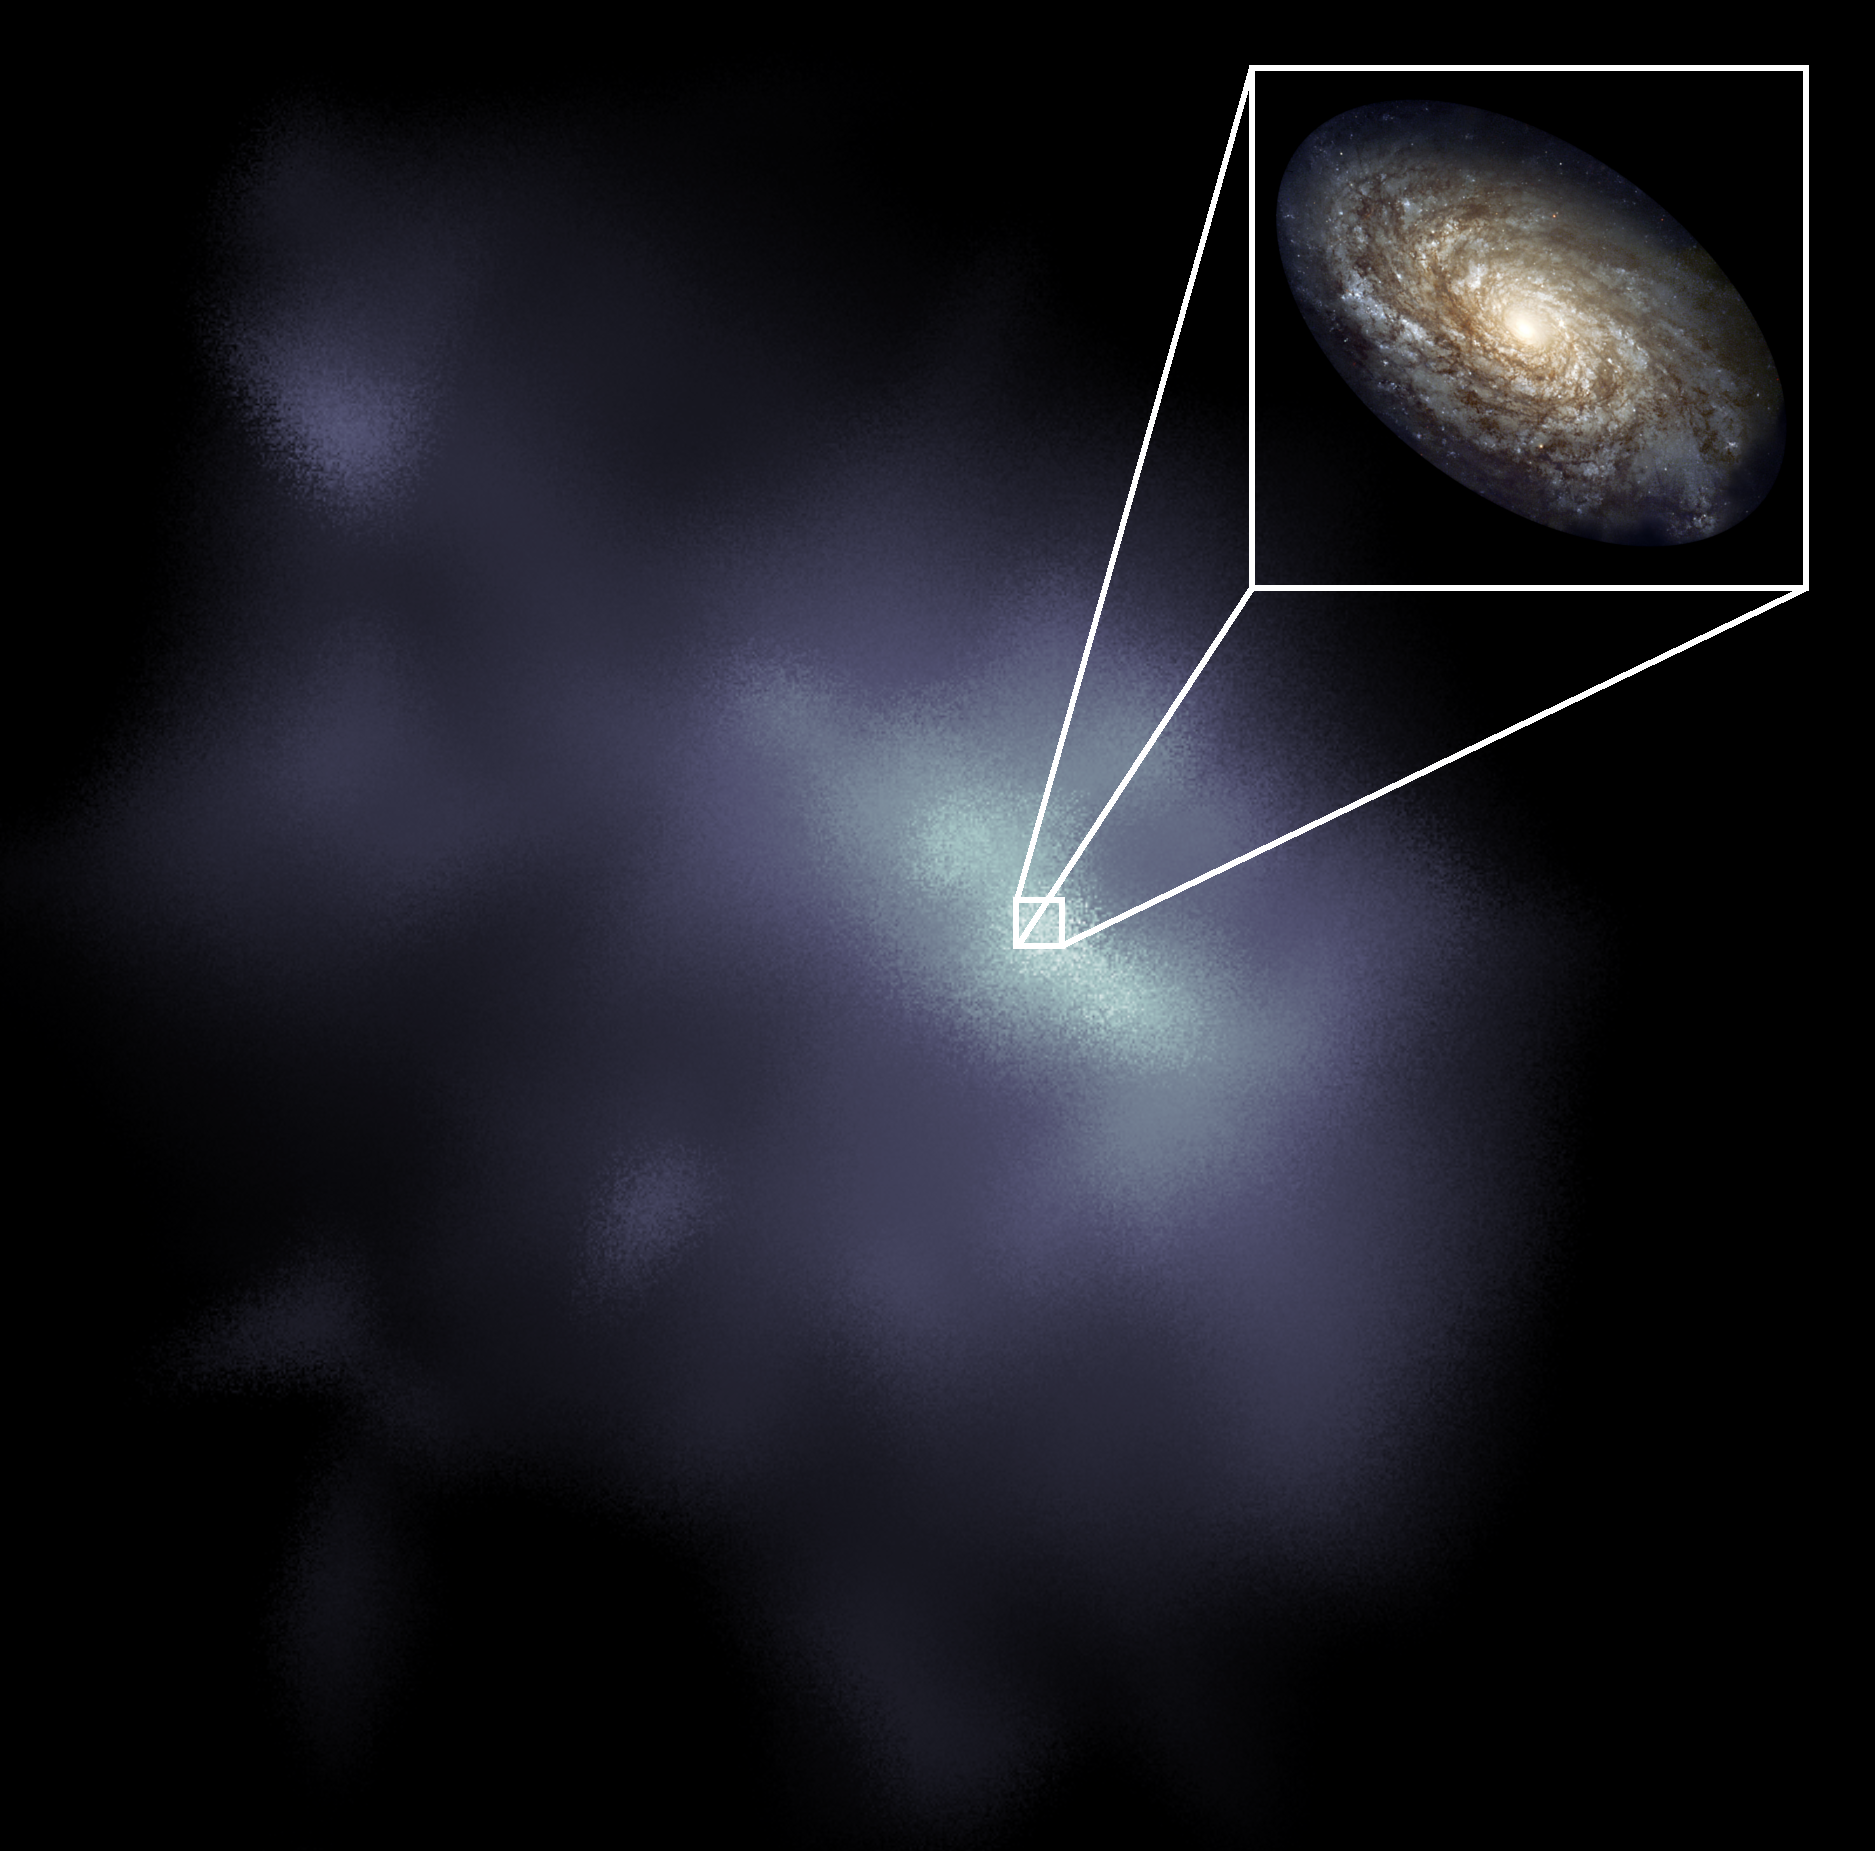 Milky-way sized dark matter halo